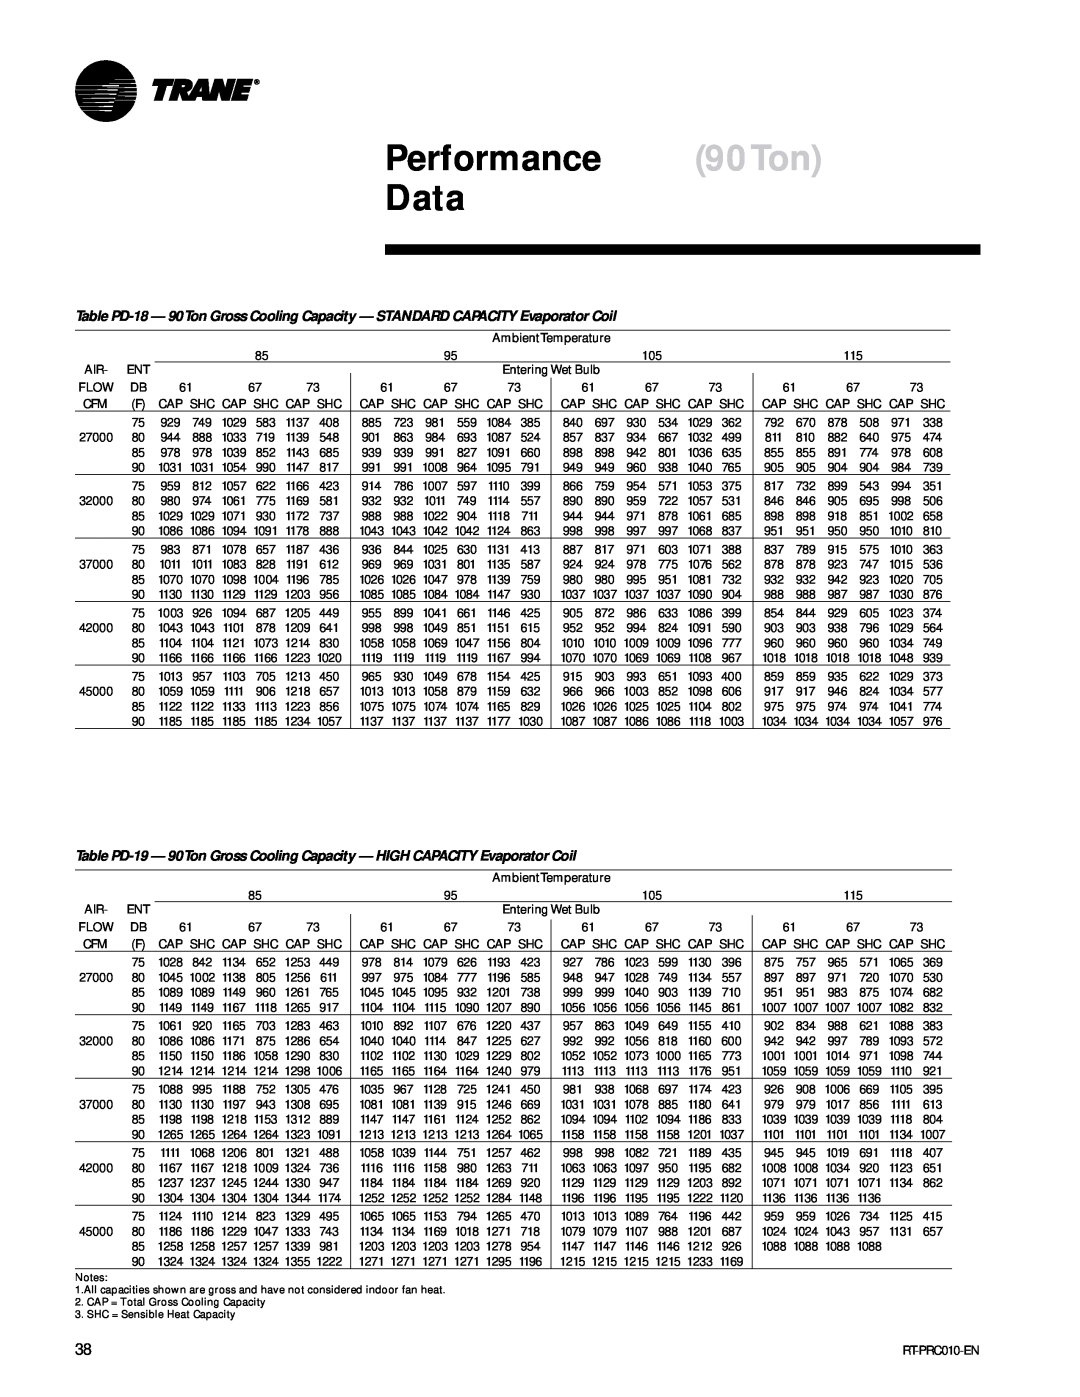 Trane RT-PRC010-EN manual Performance 90Ton Data 